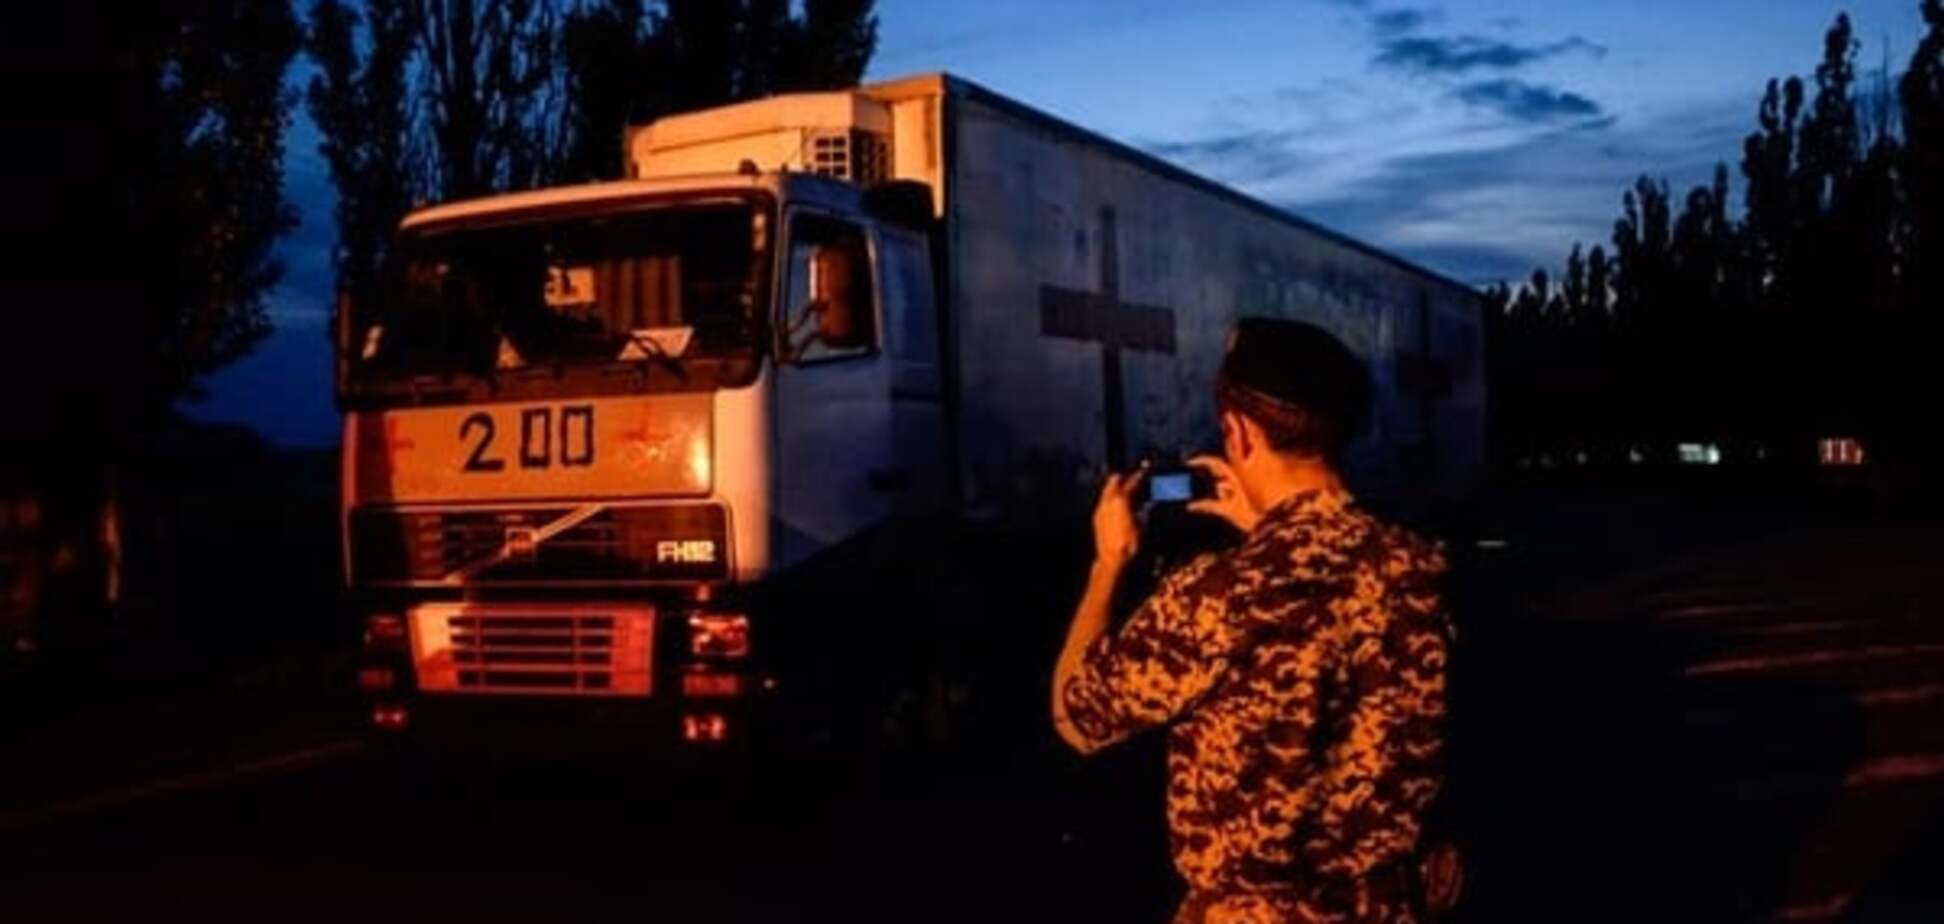 С Донбасса в Россию отправился фургон с надписью 'Груз-200' - ОБСЕ